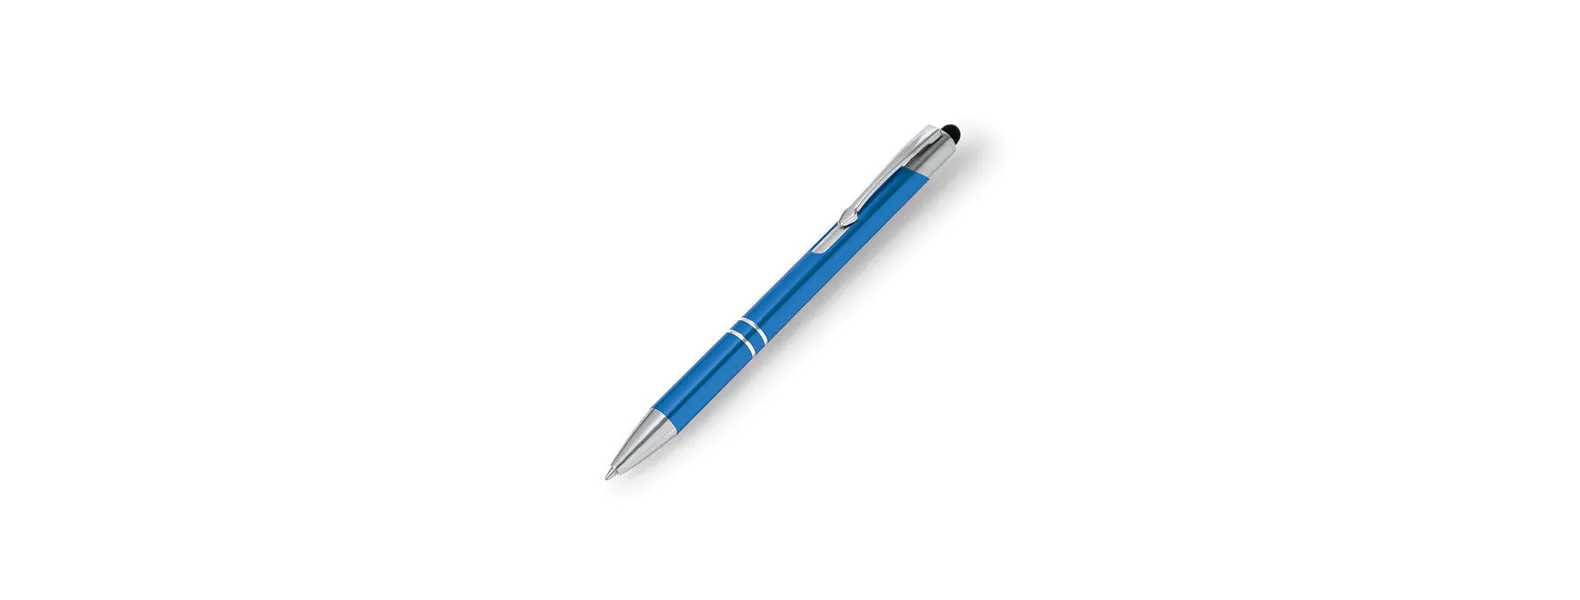 Caneta esferográfica em alumínio azul claro. Conta com acabamento cromado, clipe em metal e ponteira touch em silicone preto. Carga esferográfica azul acionada por um click na extremidade da caneta.